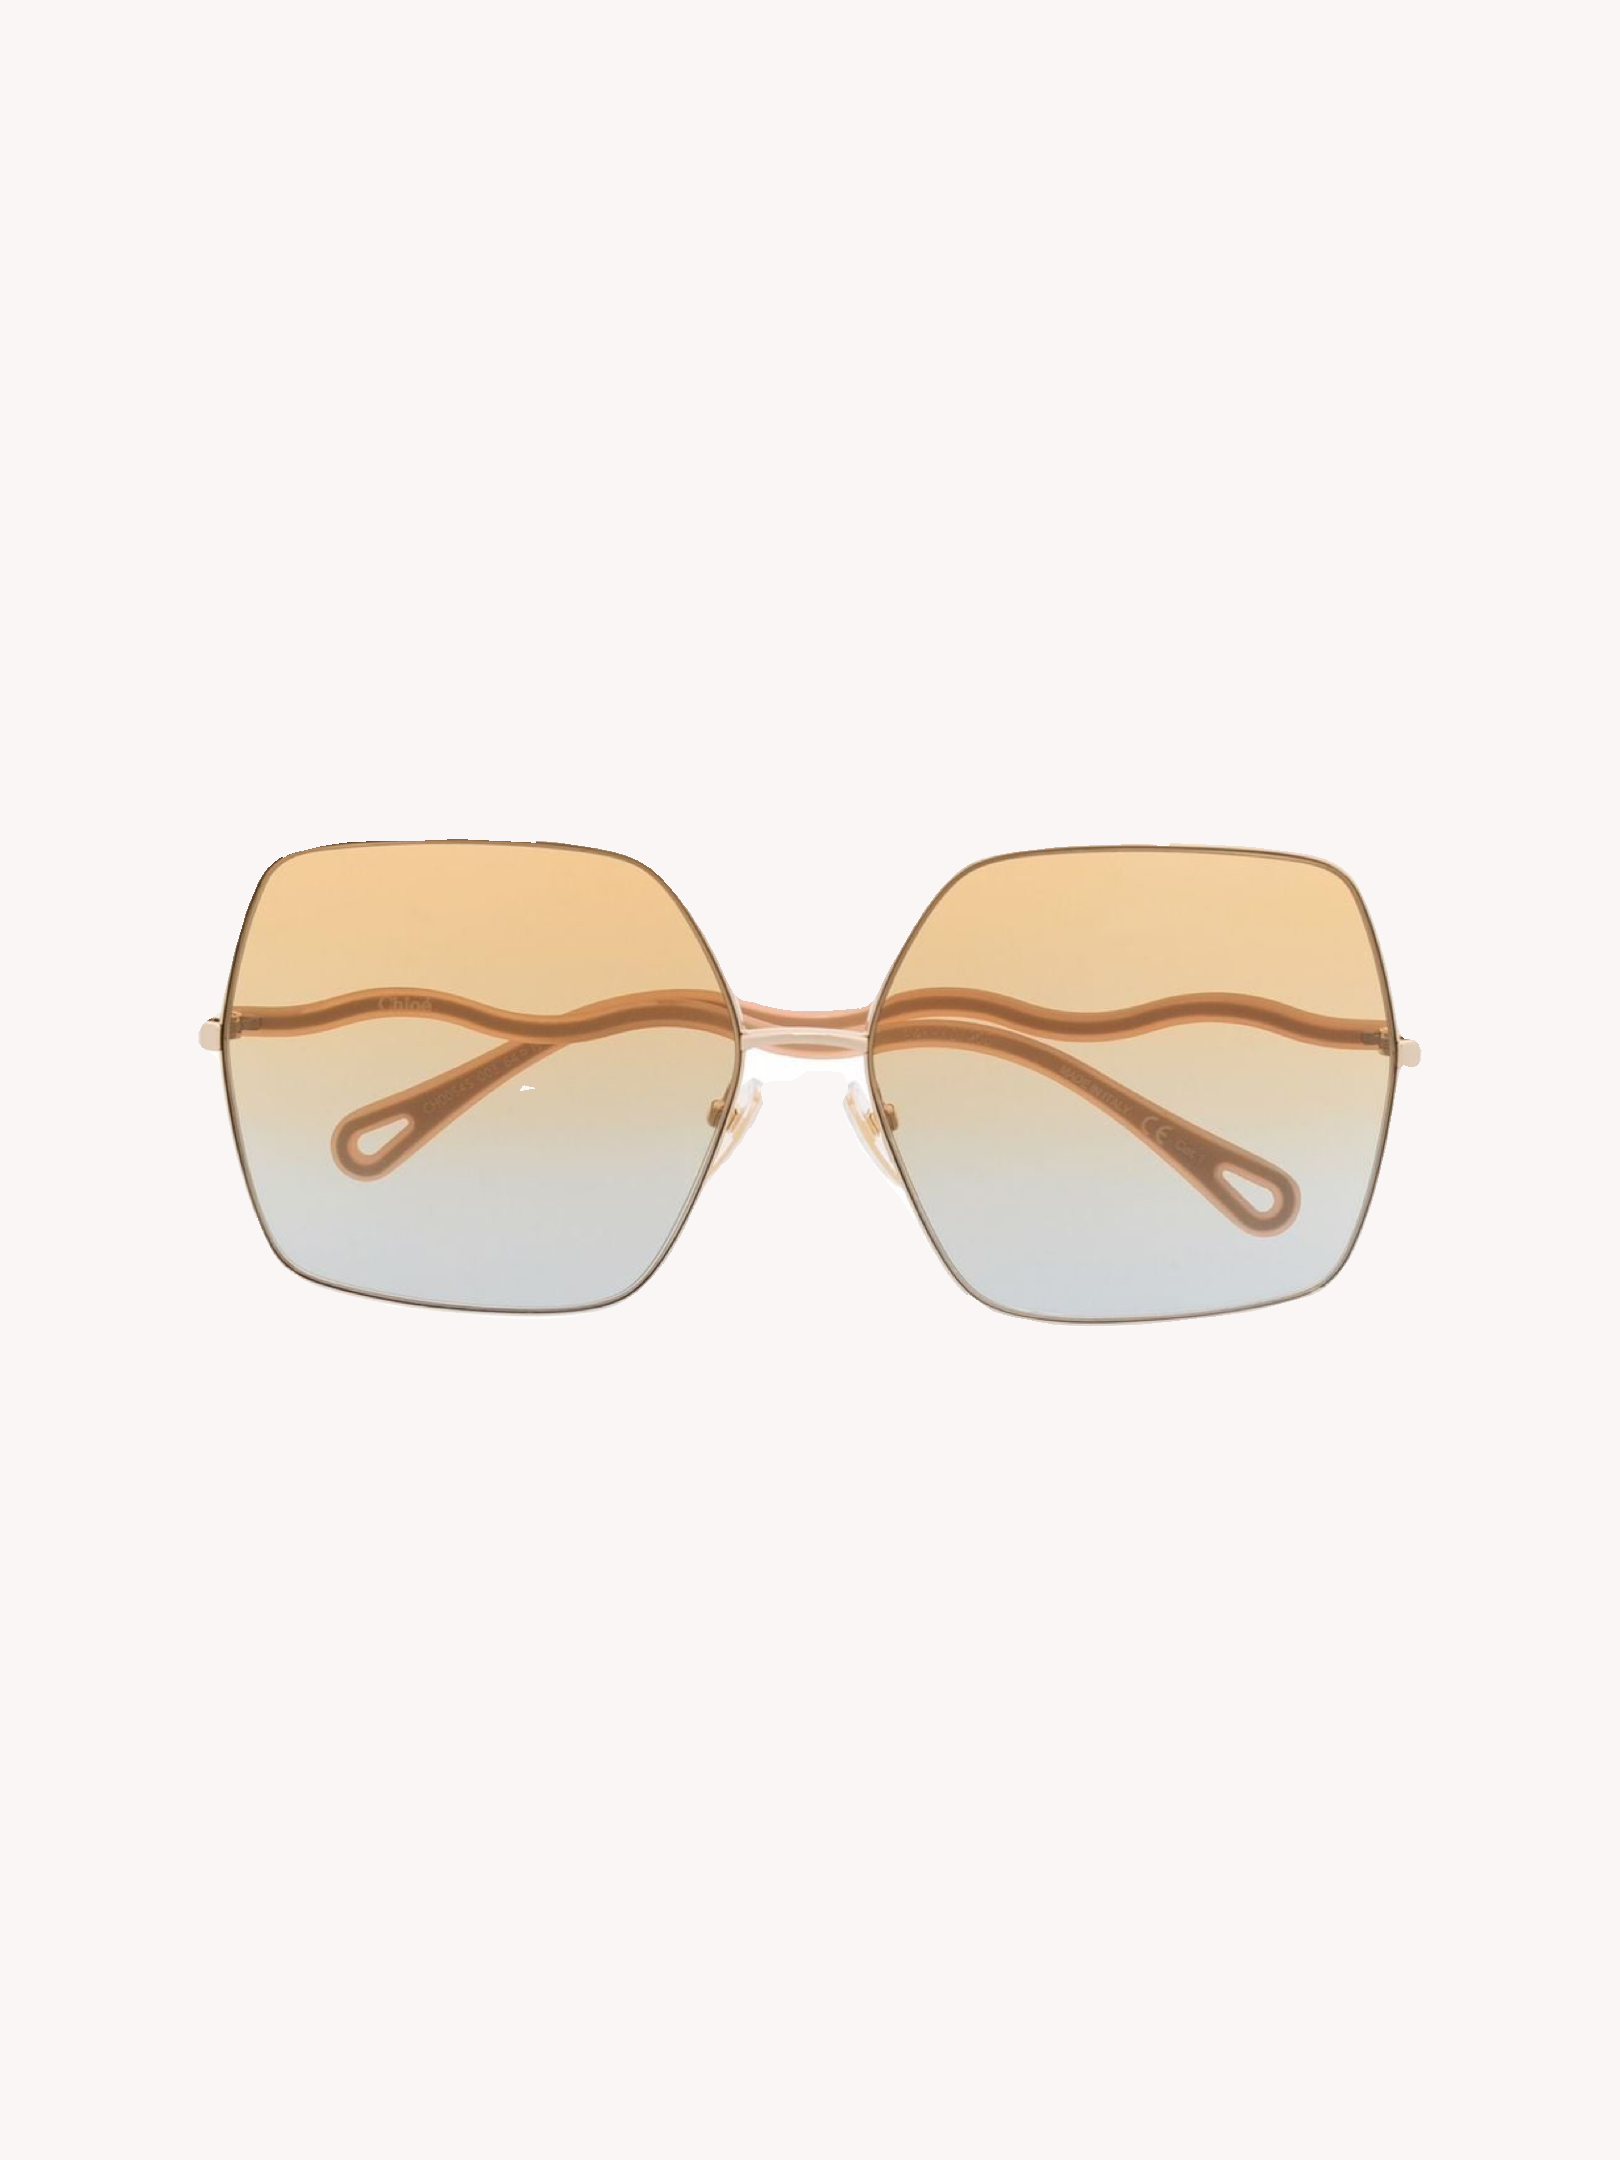 Солнцезащитные очки Chloe золотистые